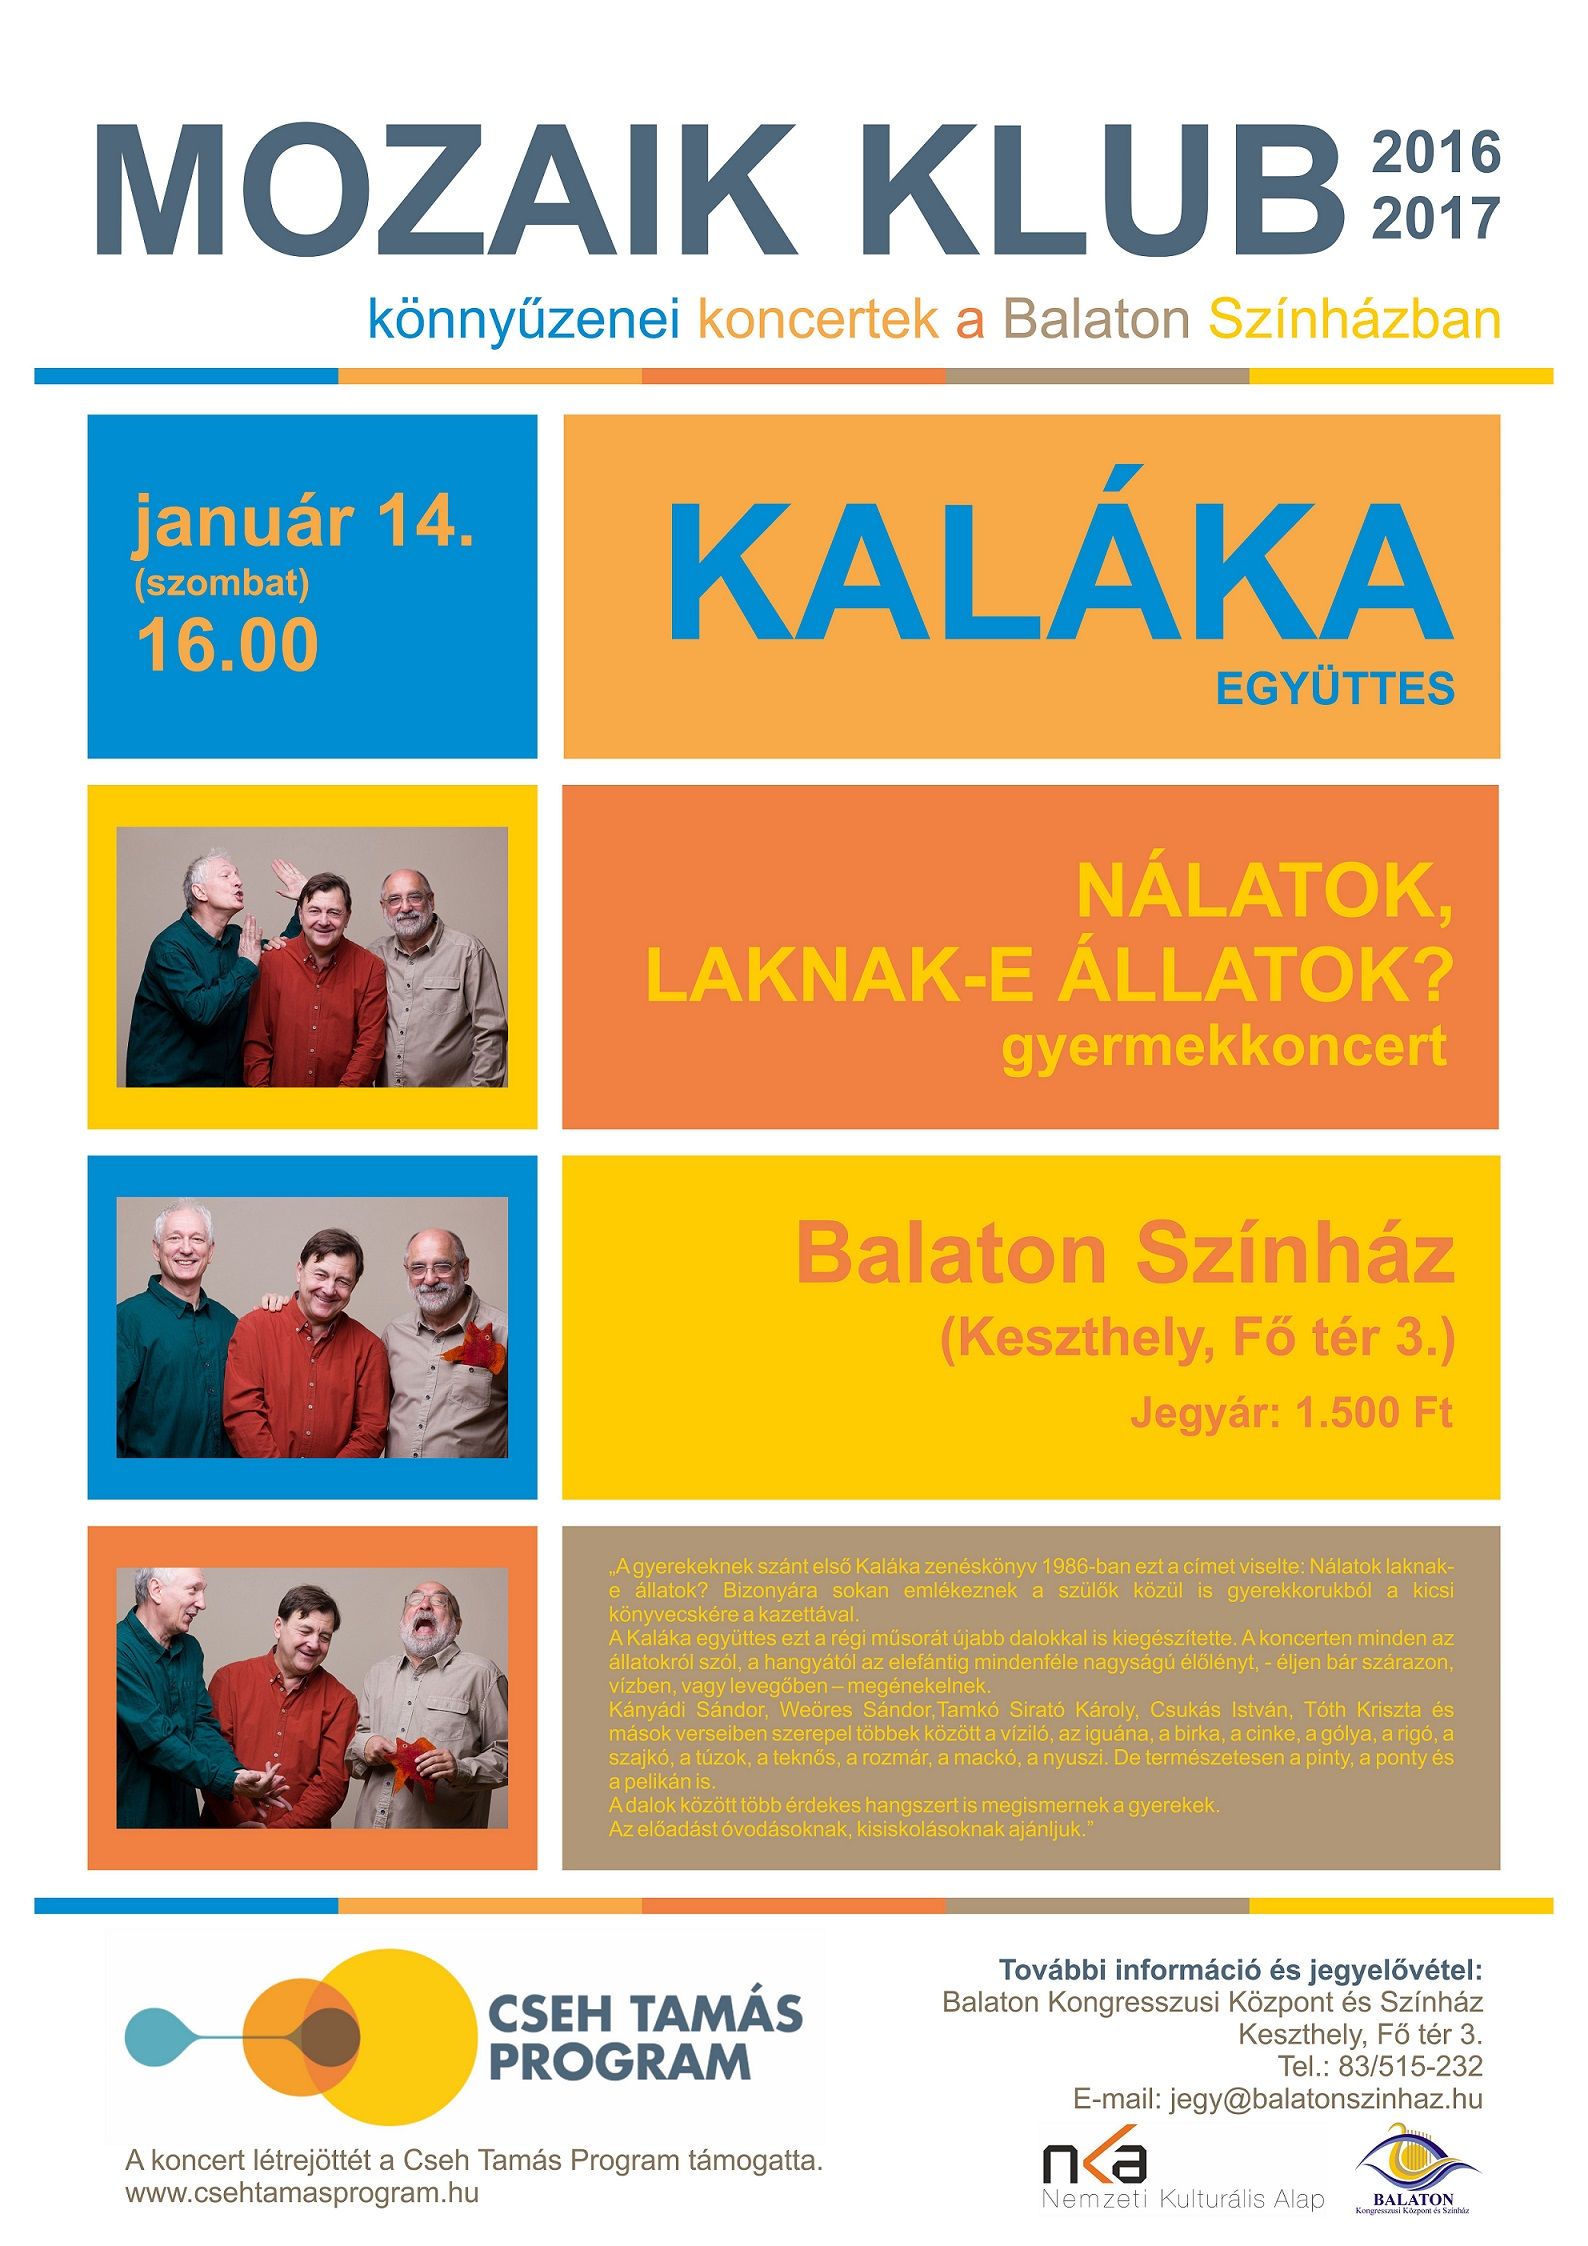 Kalláka együttes koncertje Keszthelyen a Balaton Színházban